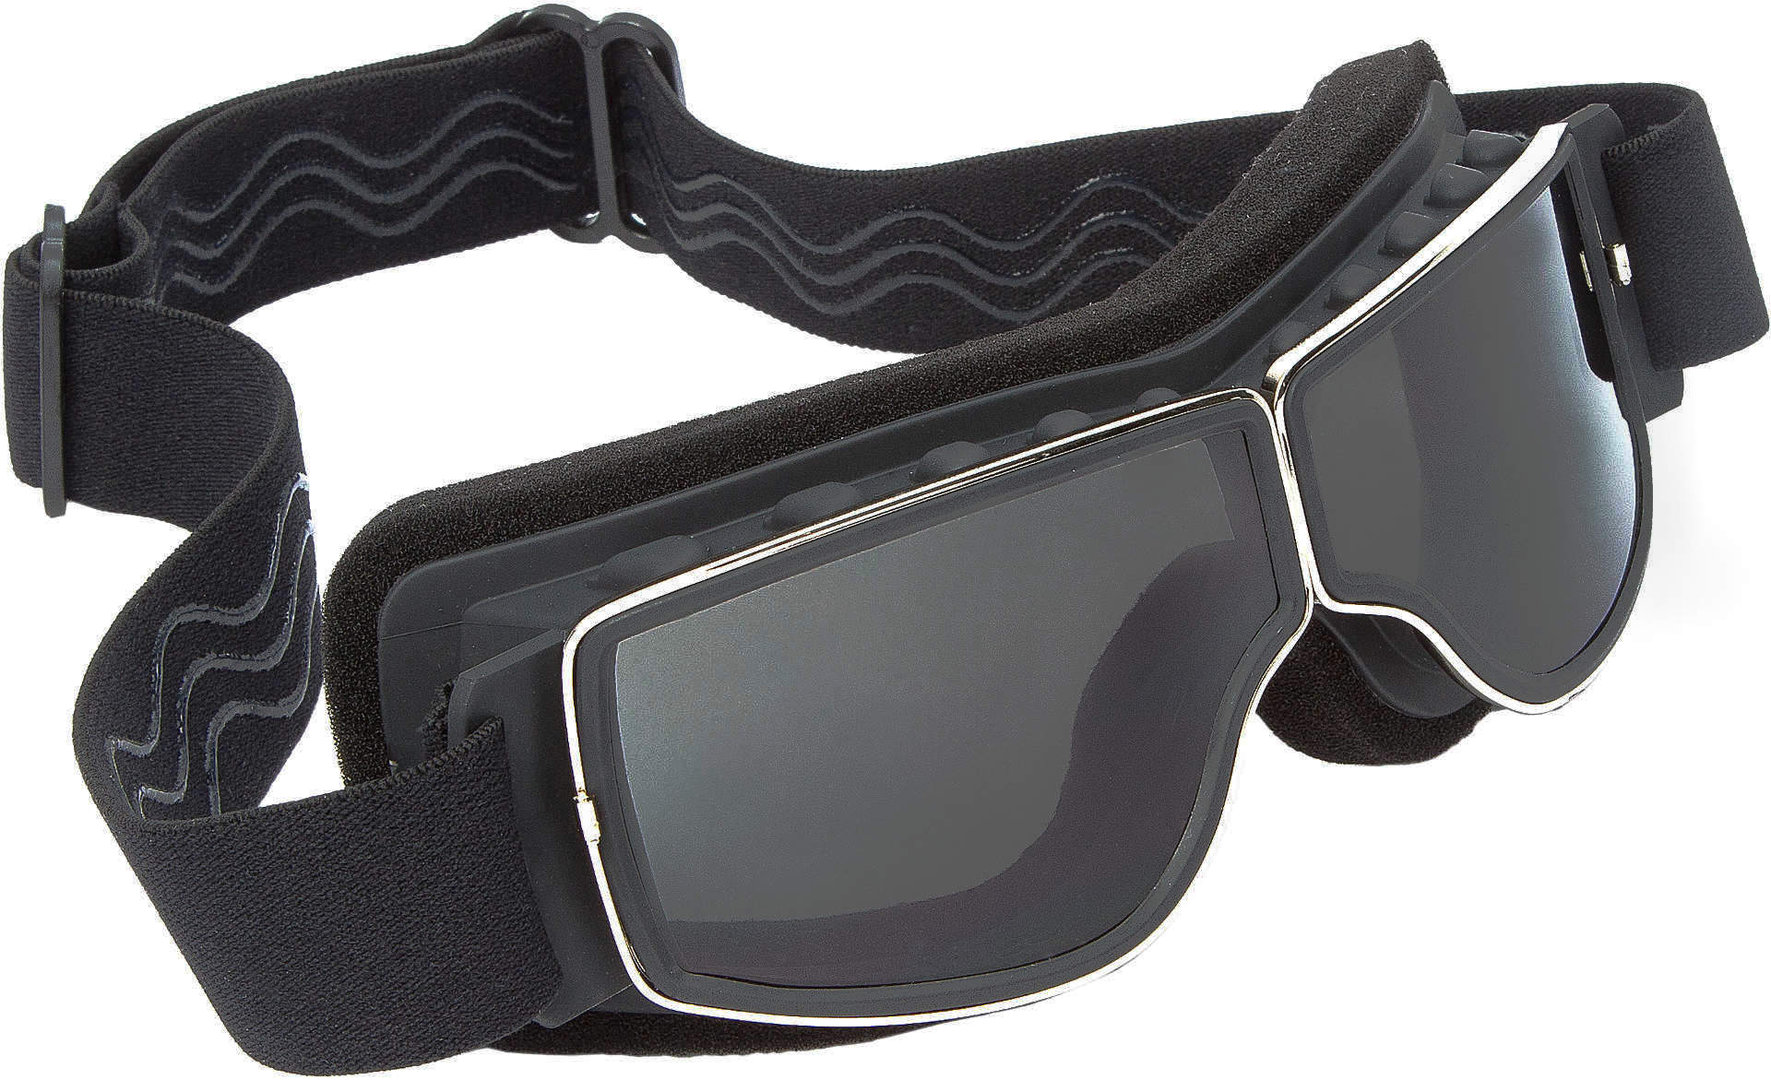 Modeka Nevada Motorcycle Glasses, black-grey, black-grey, Size One Size